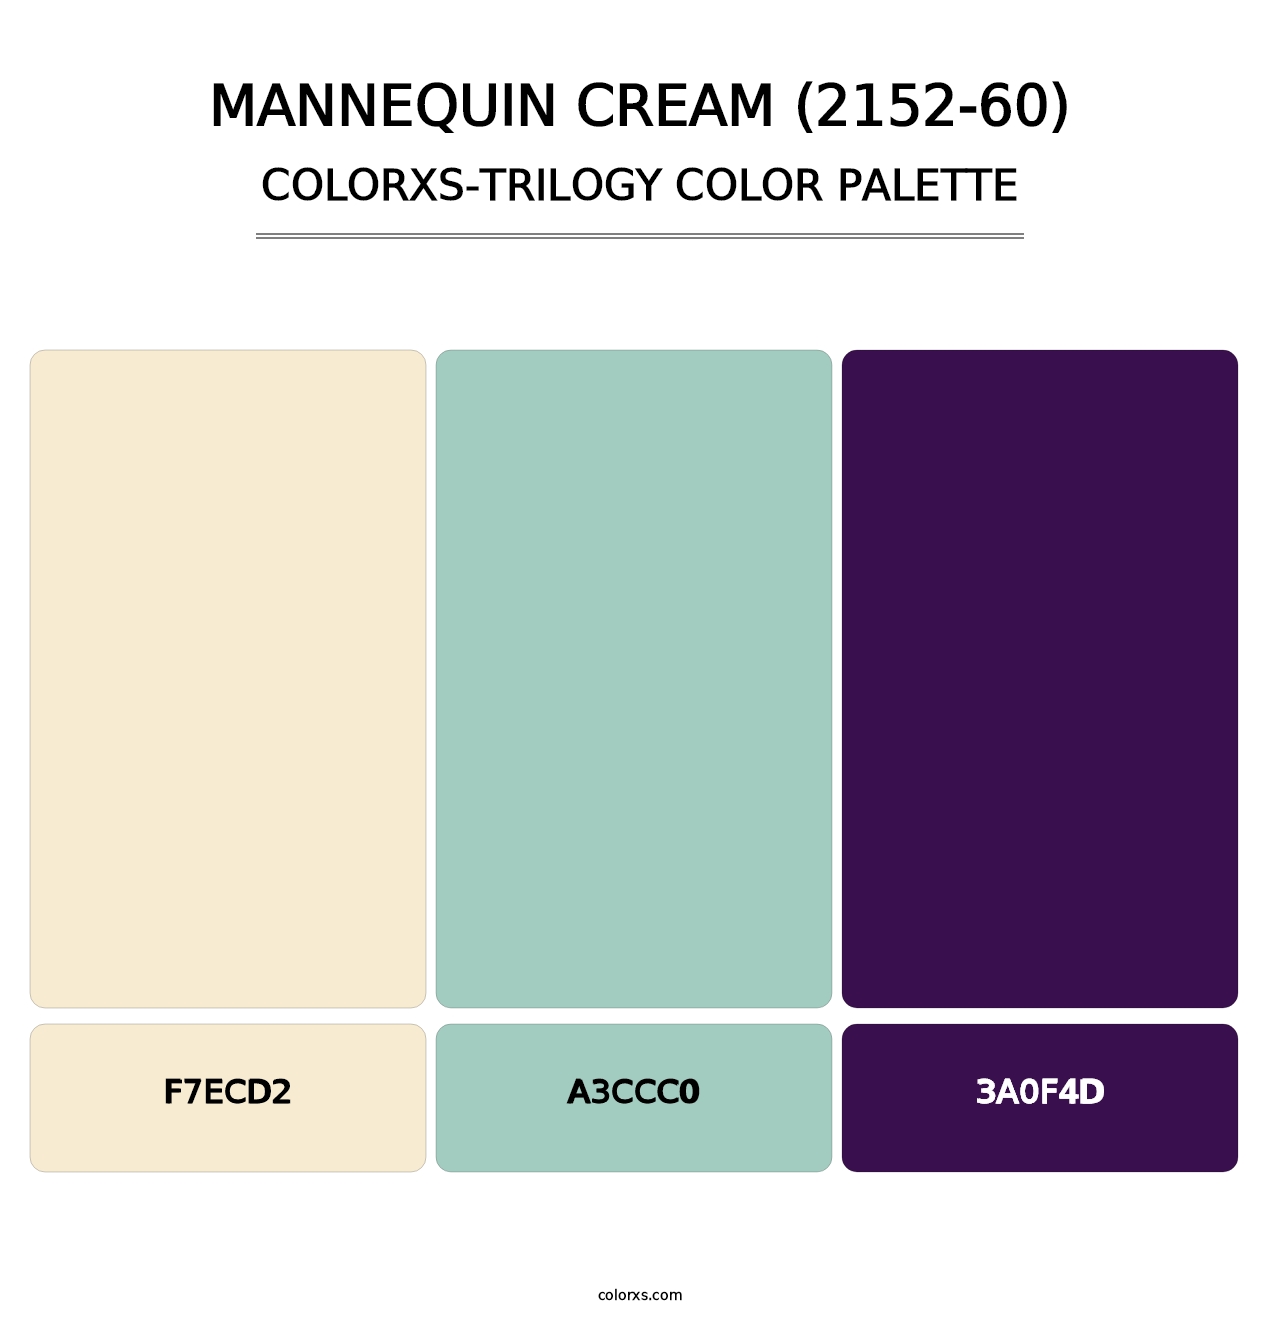 Mannequin Cream (2152-60) - Colorxs Trilogy Palette